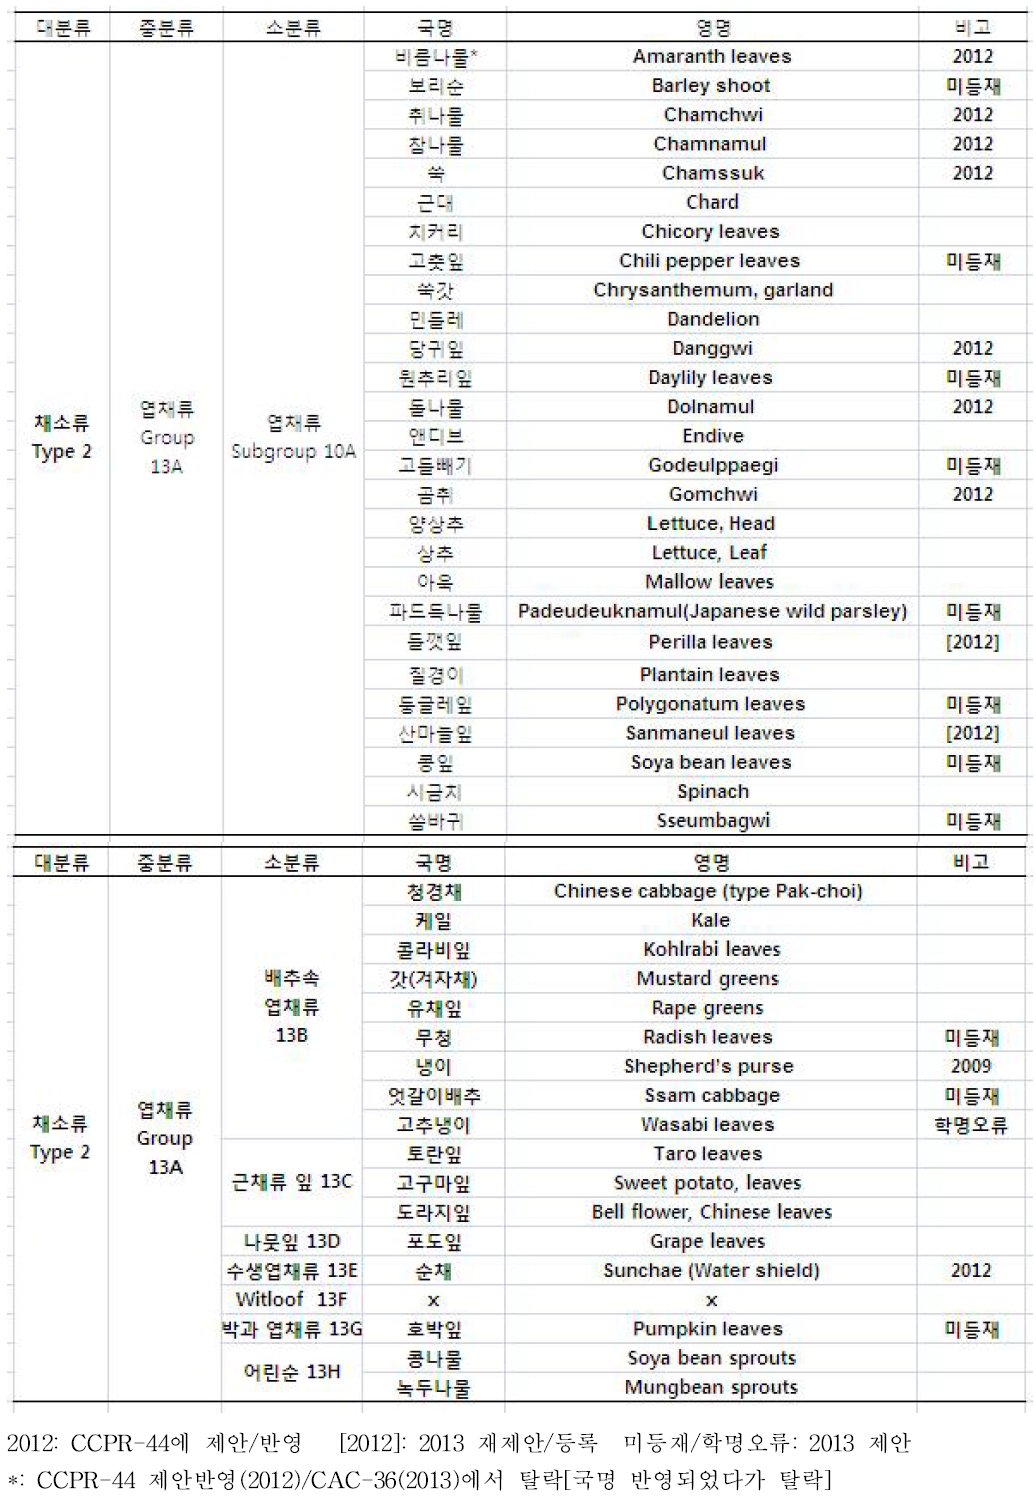 한국 엽채류(10A) 목록과 CODEX 미등재와 오류.